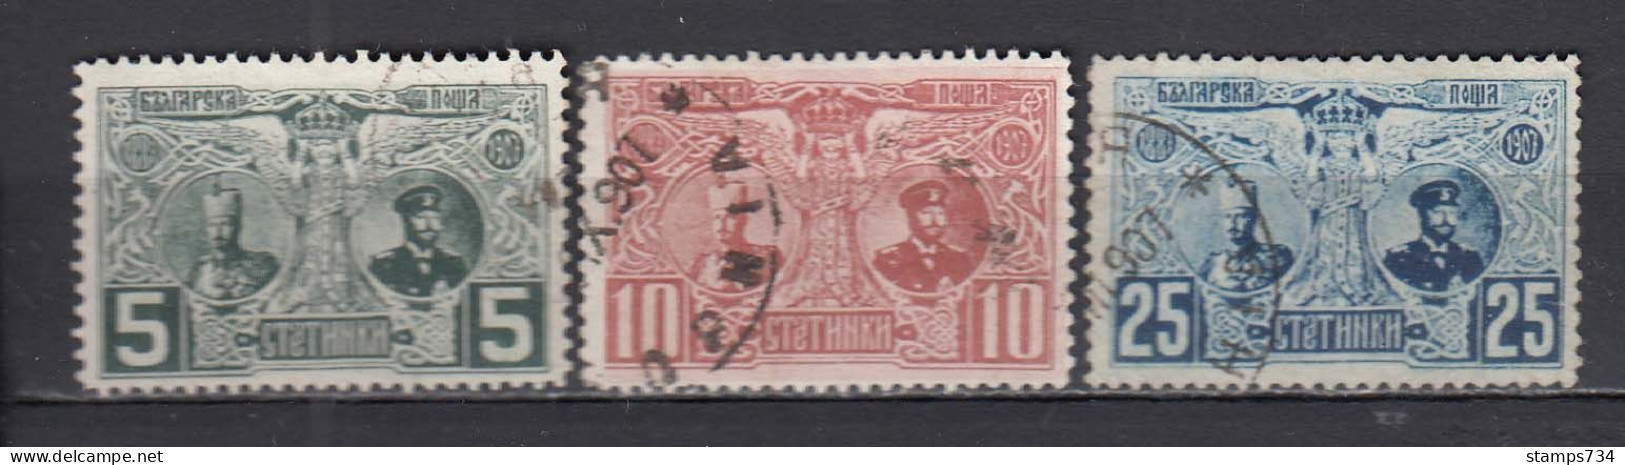 Bulgarie 1907 - 20 Ann. De Regne De Ferdinand I, YT 69-71, Obliteres - Usati